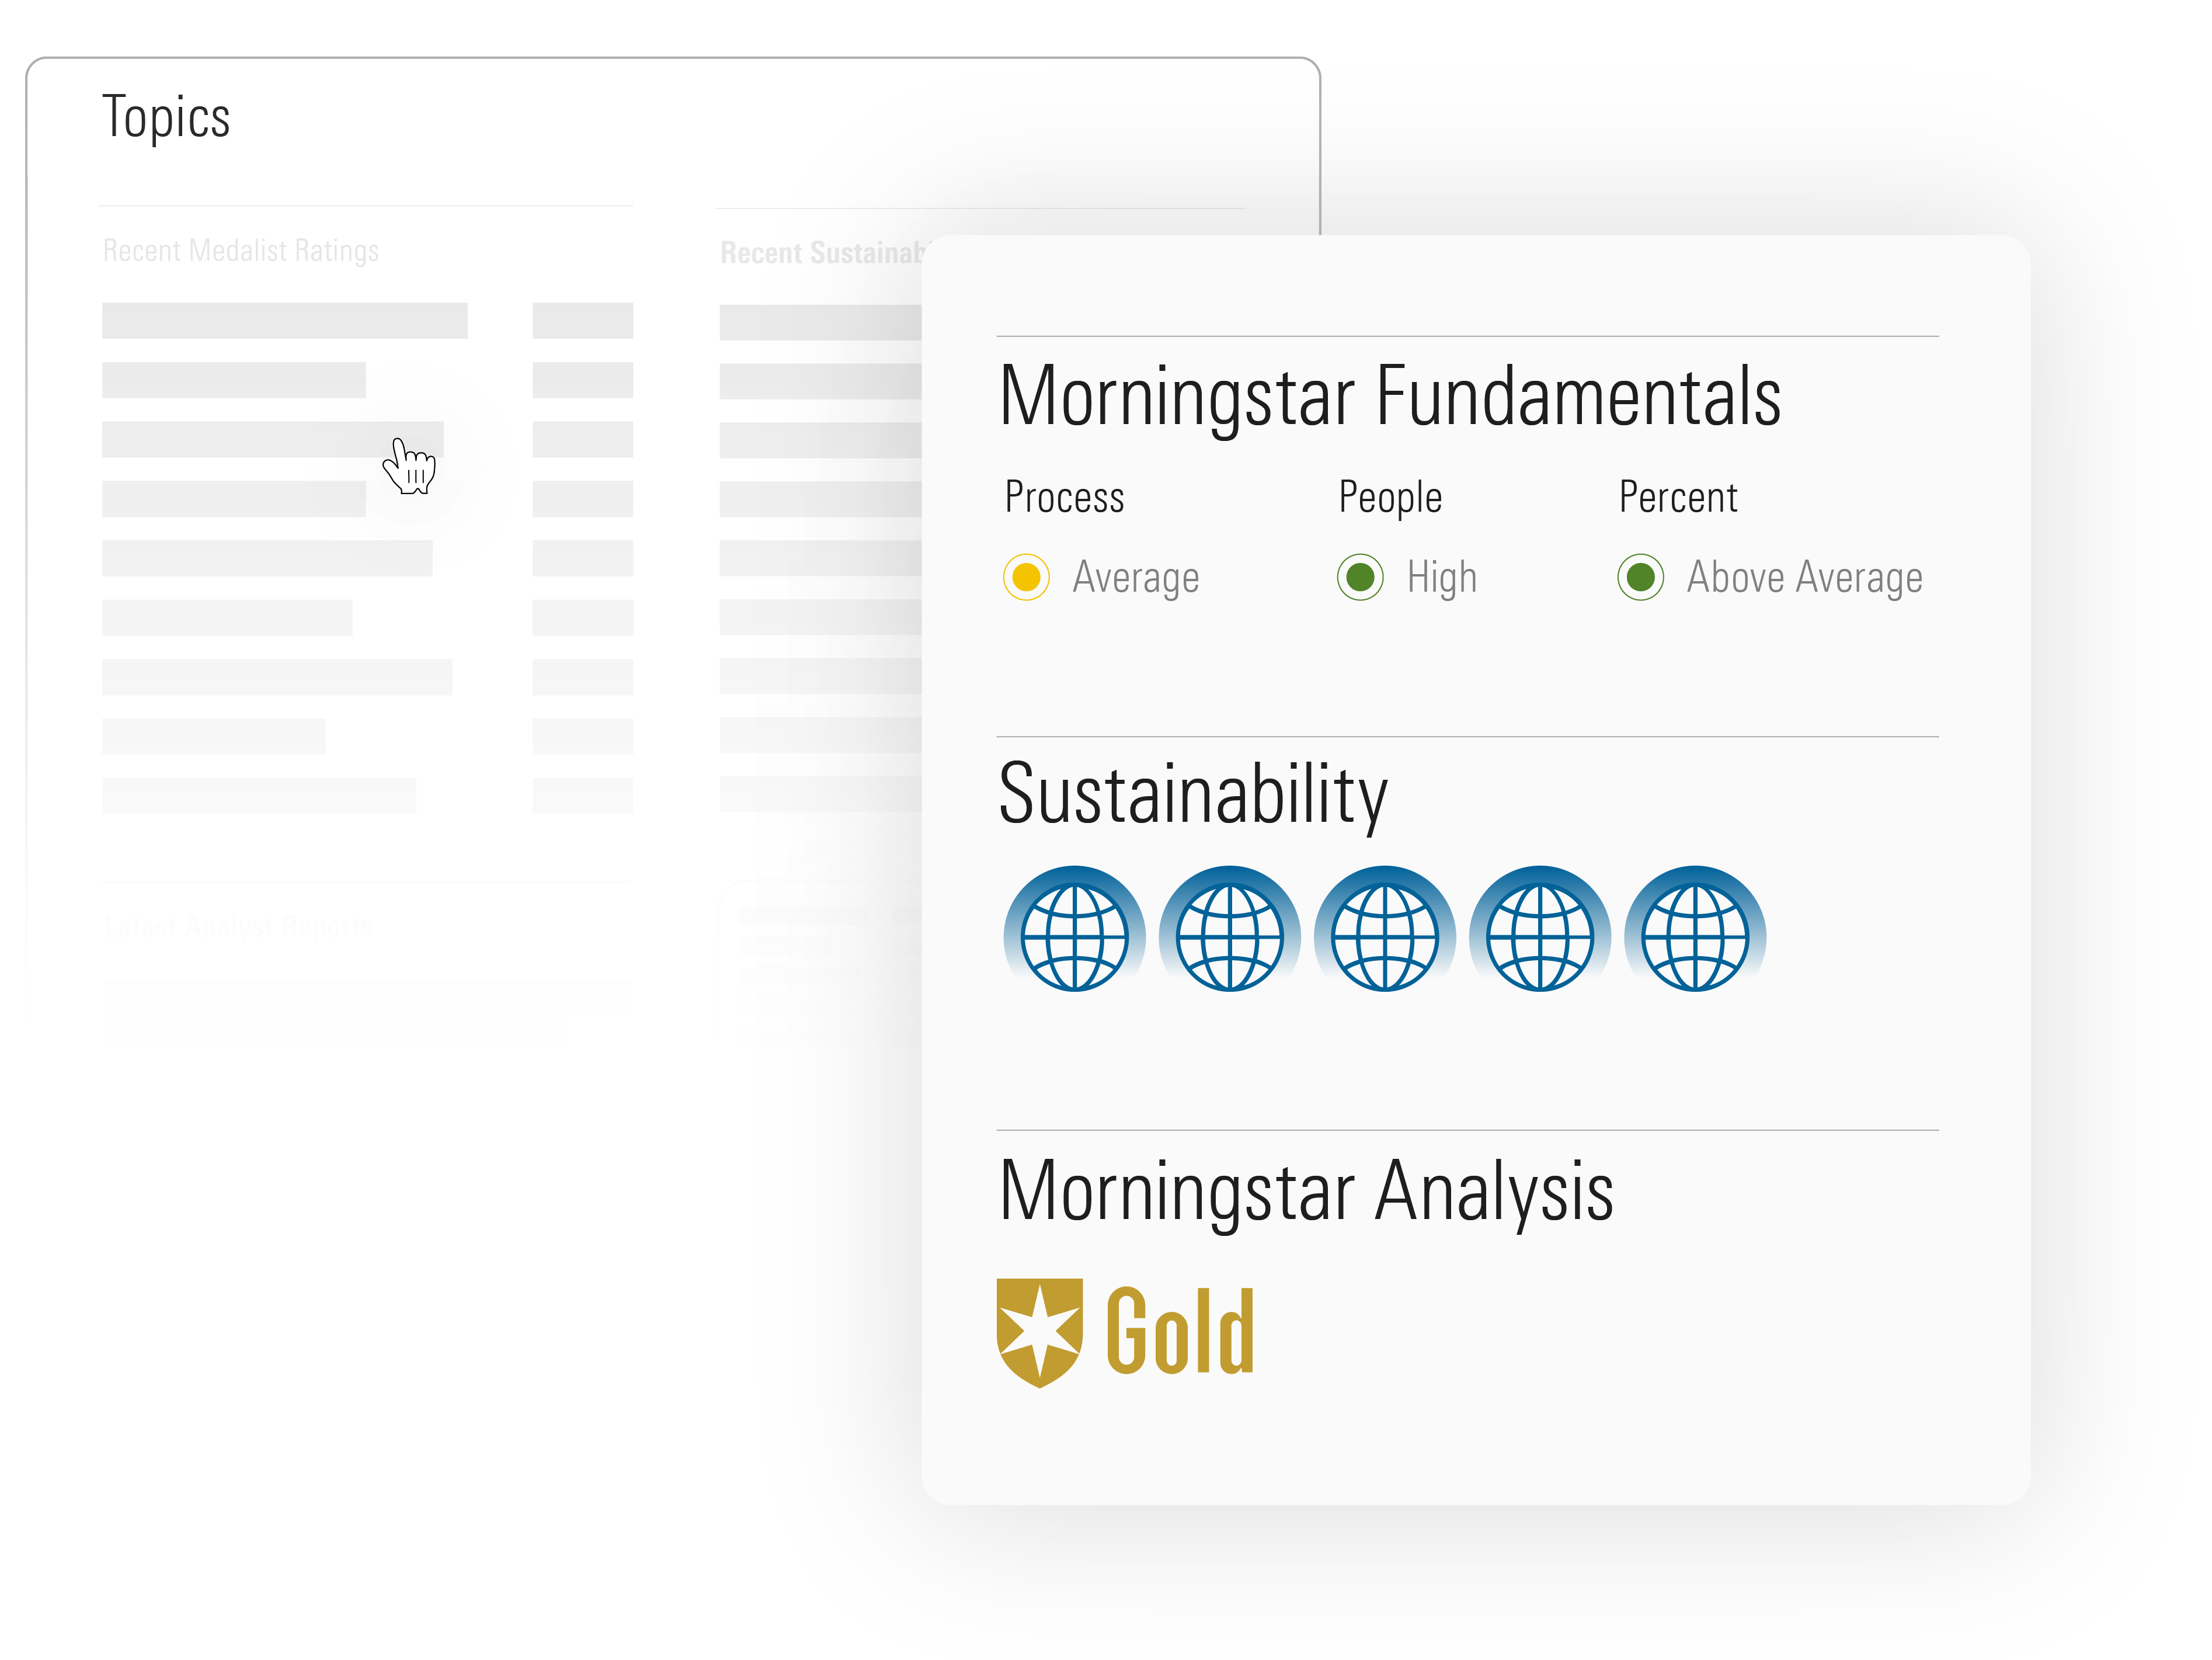 Illustration of Morningstar topics, including Morningstar Fundamentals, Sustainability, and Morningstar Analysis.